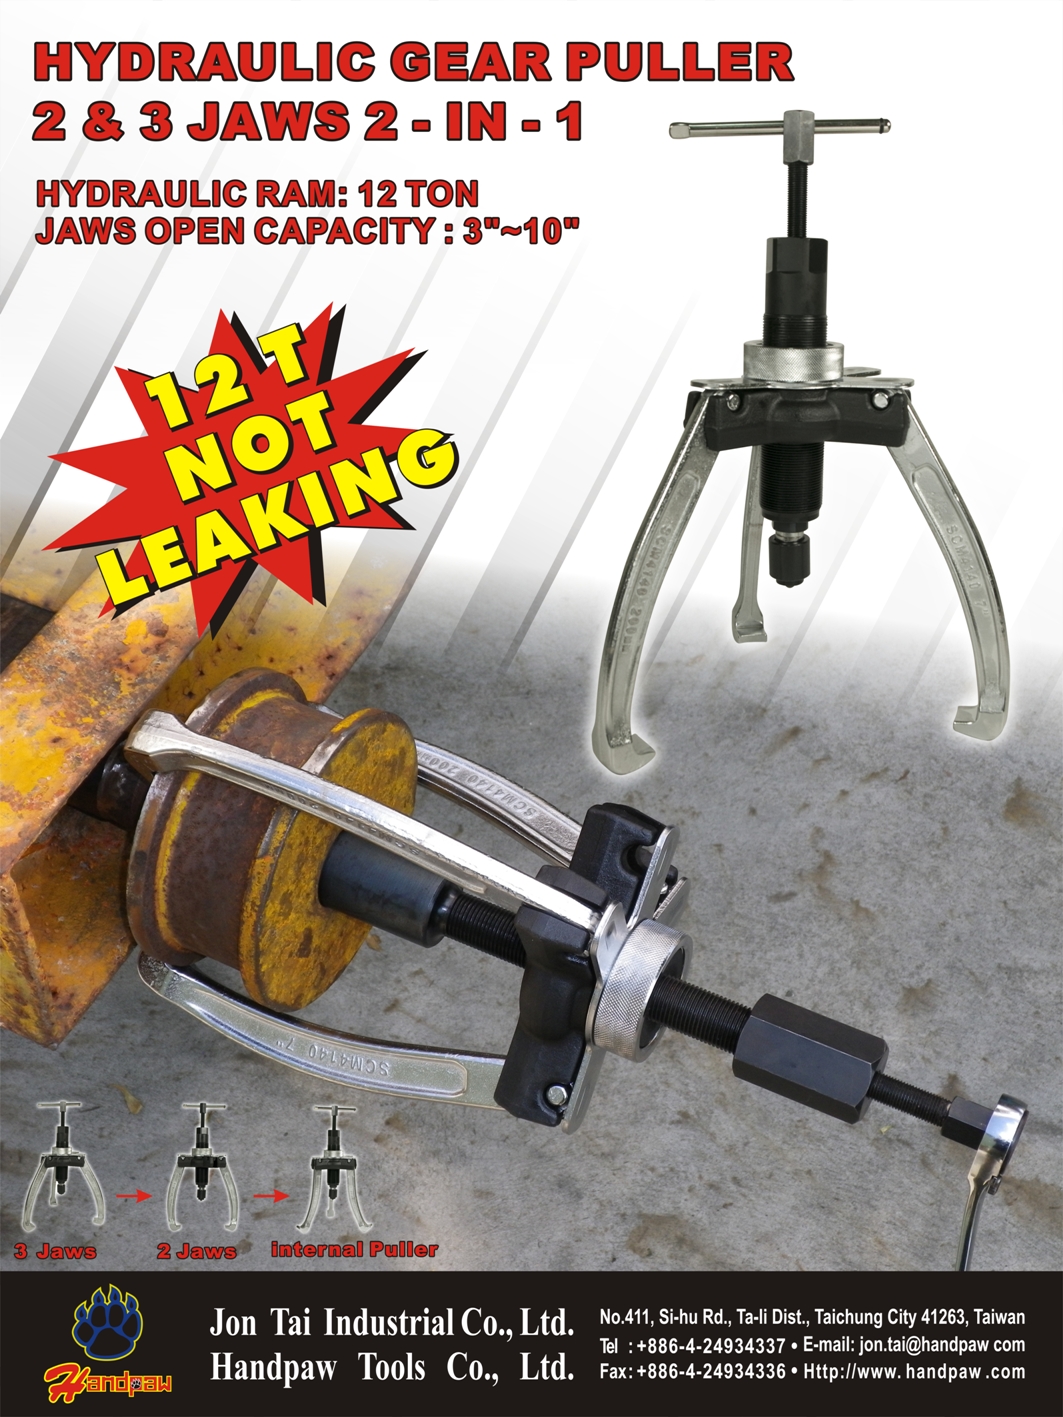 Powerful Hydraulic Gear Puller 2&3 jaws 2-in-1